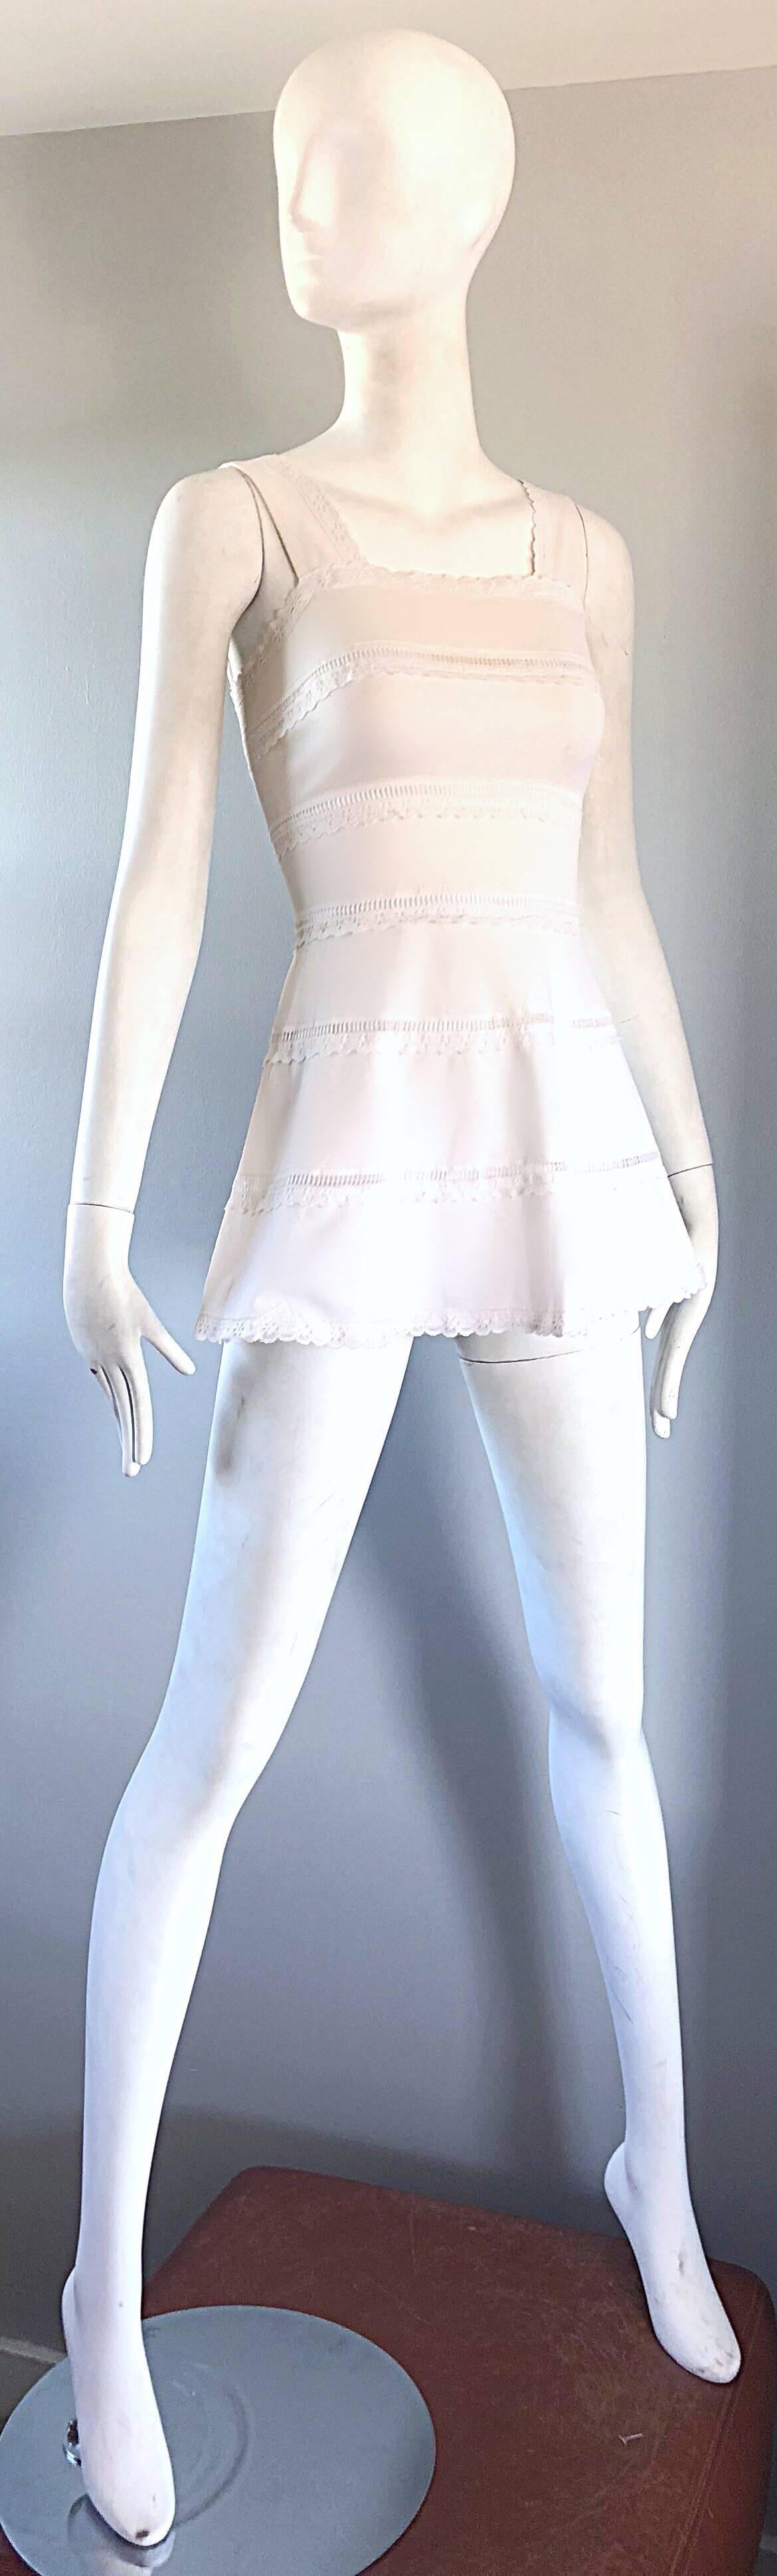 1960s White Knit Lace Cut Out A Line Vintage Mod Tunic 60s Mini Dress 1